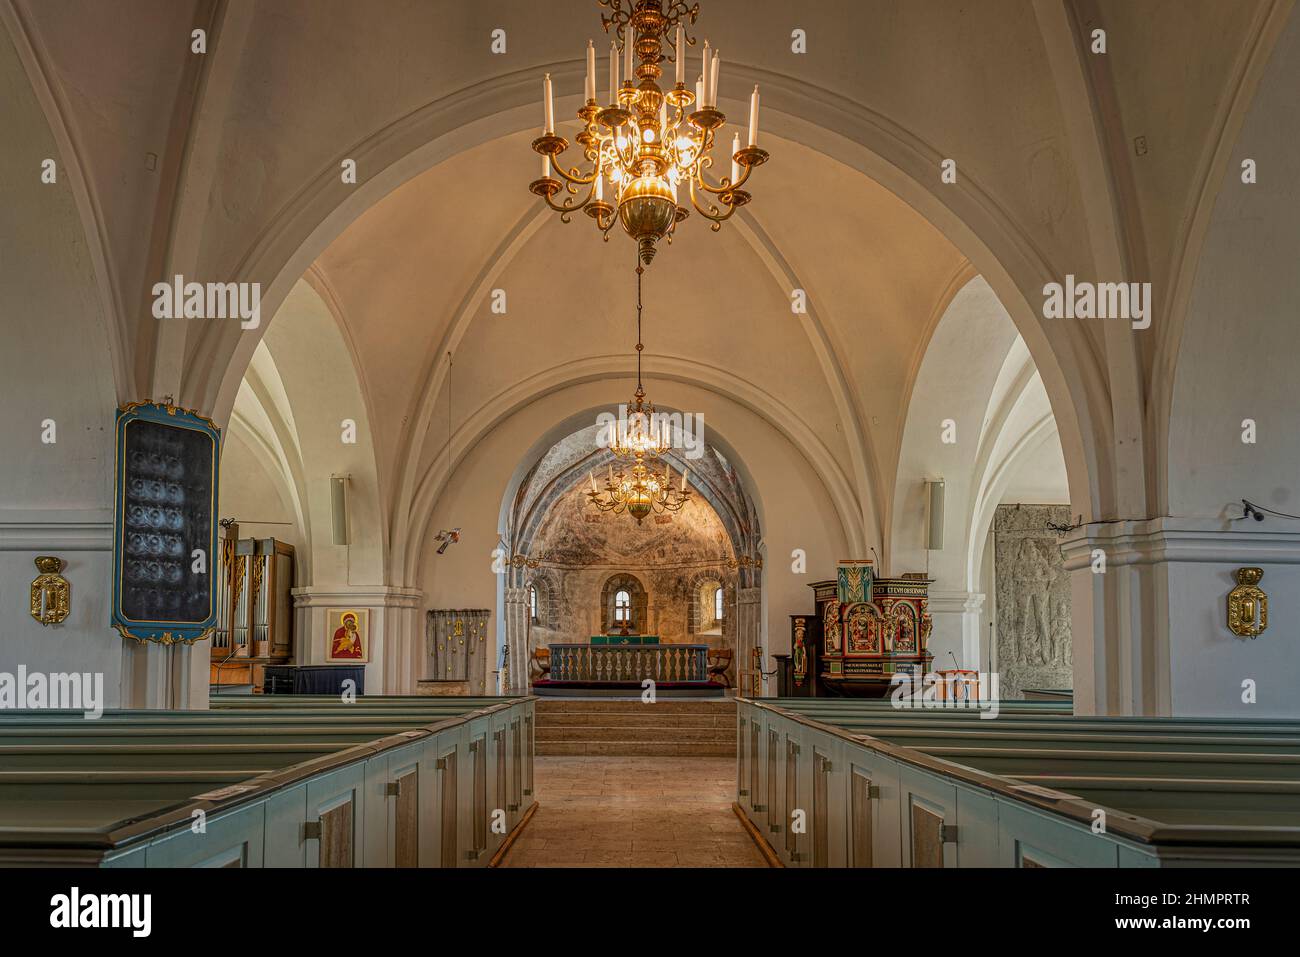 Interno di una chiesa luterana con archi bianchi, illuminata da un grande lampadario, Skurup, Svezia, 16 luglio 2021 Foto Stock